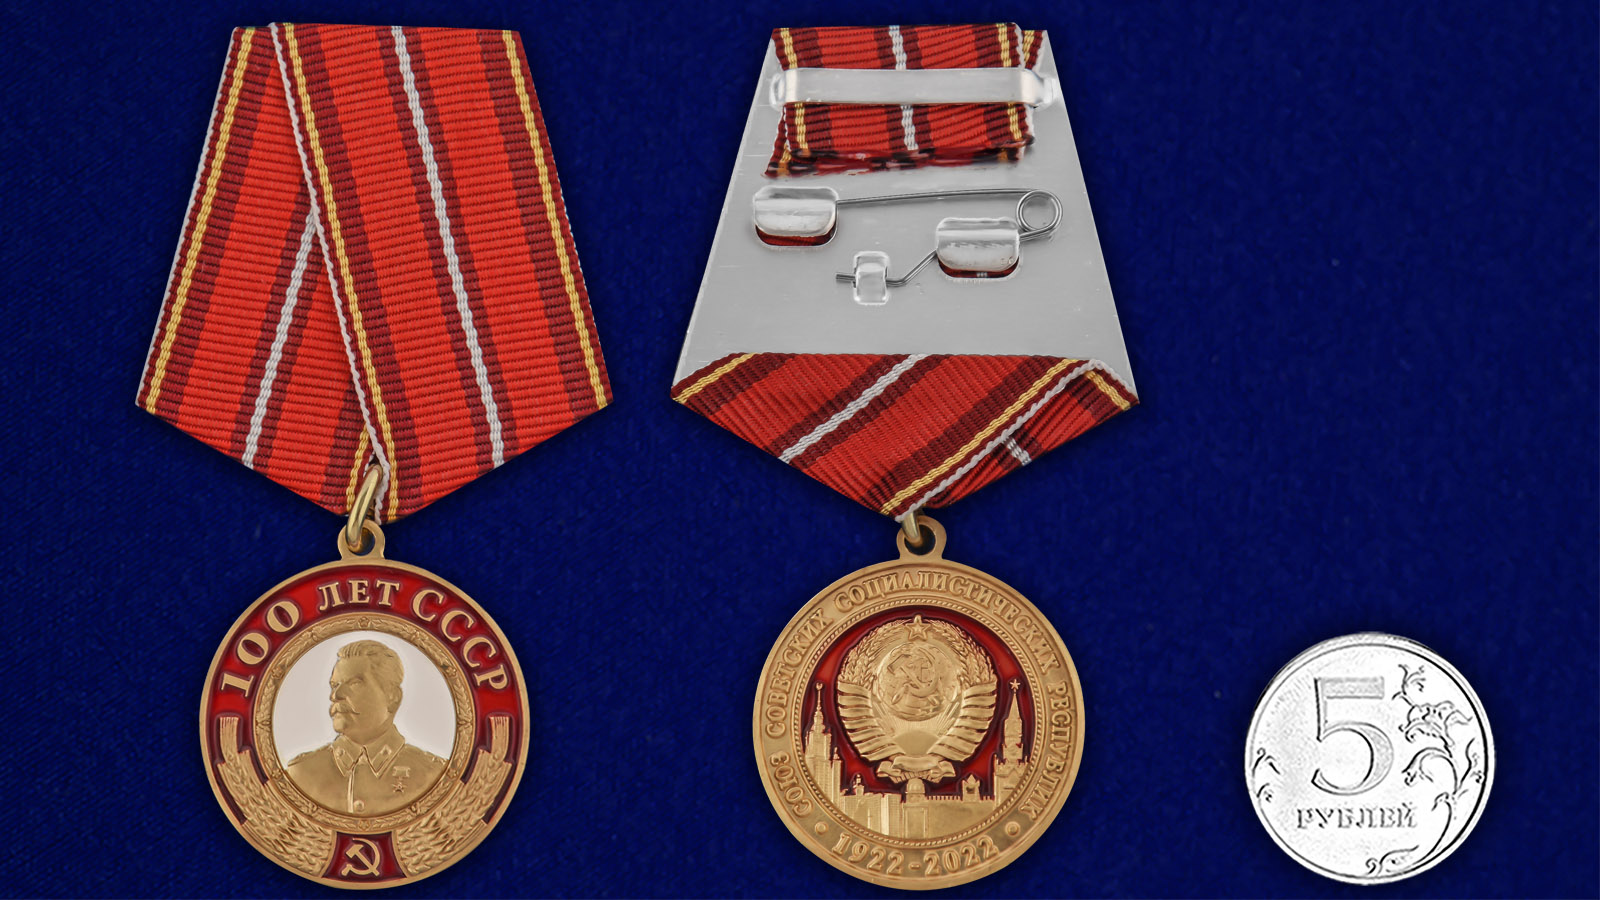 Купить медаль со Сталиным 100 лет СССР онлайн выгодно